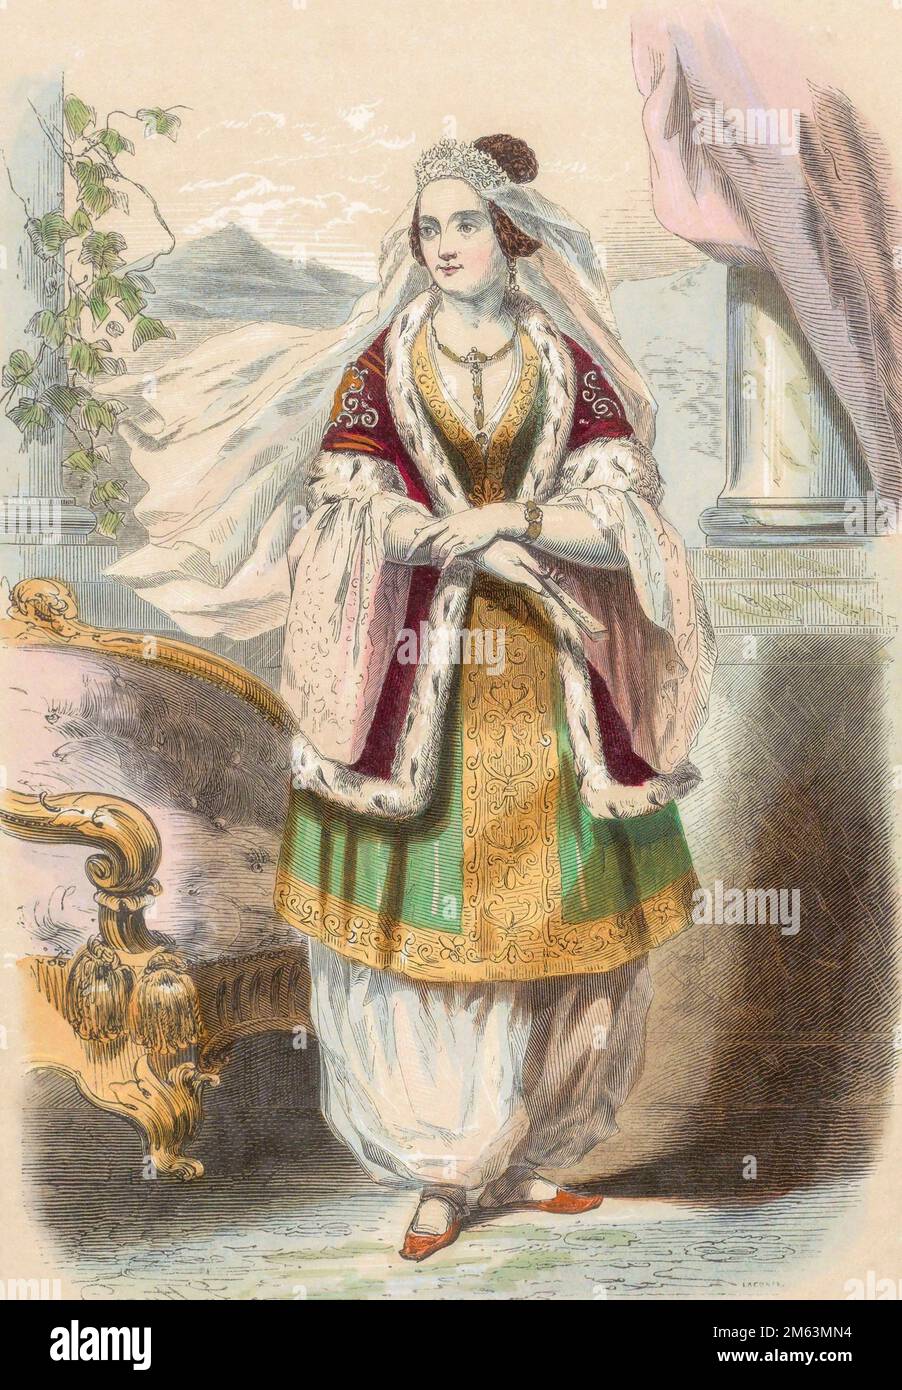 Amalia de Oldenburg, 1818 â. “ 1875, reina de Grecia de nacimiento bávaro, esposa del rey Otón de Grecia. Después de una impresión del siglo 19th por J. L. Lacoste. Foto de stock